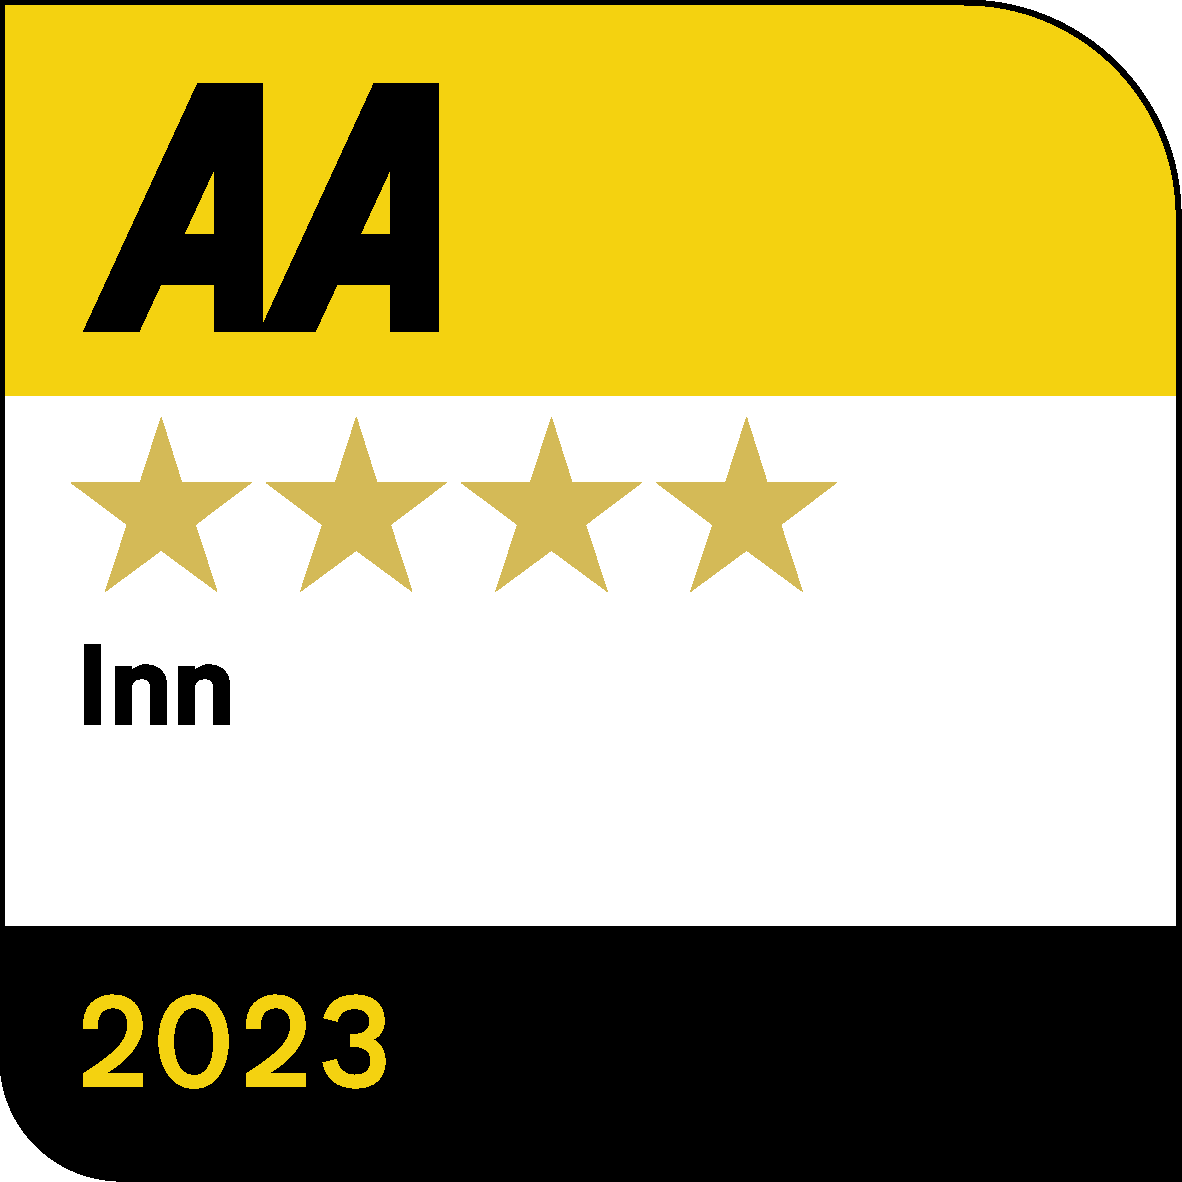 AA 4 Star Inn - Quality Inspected 2023